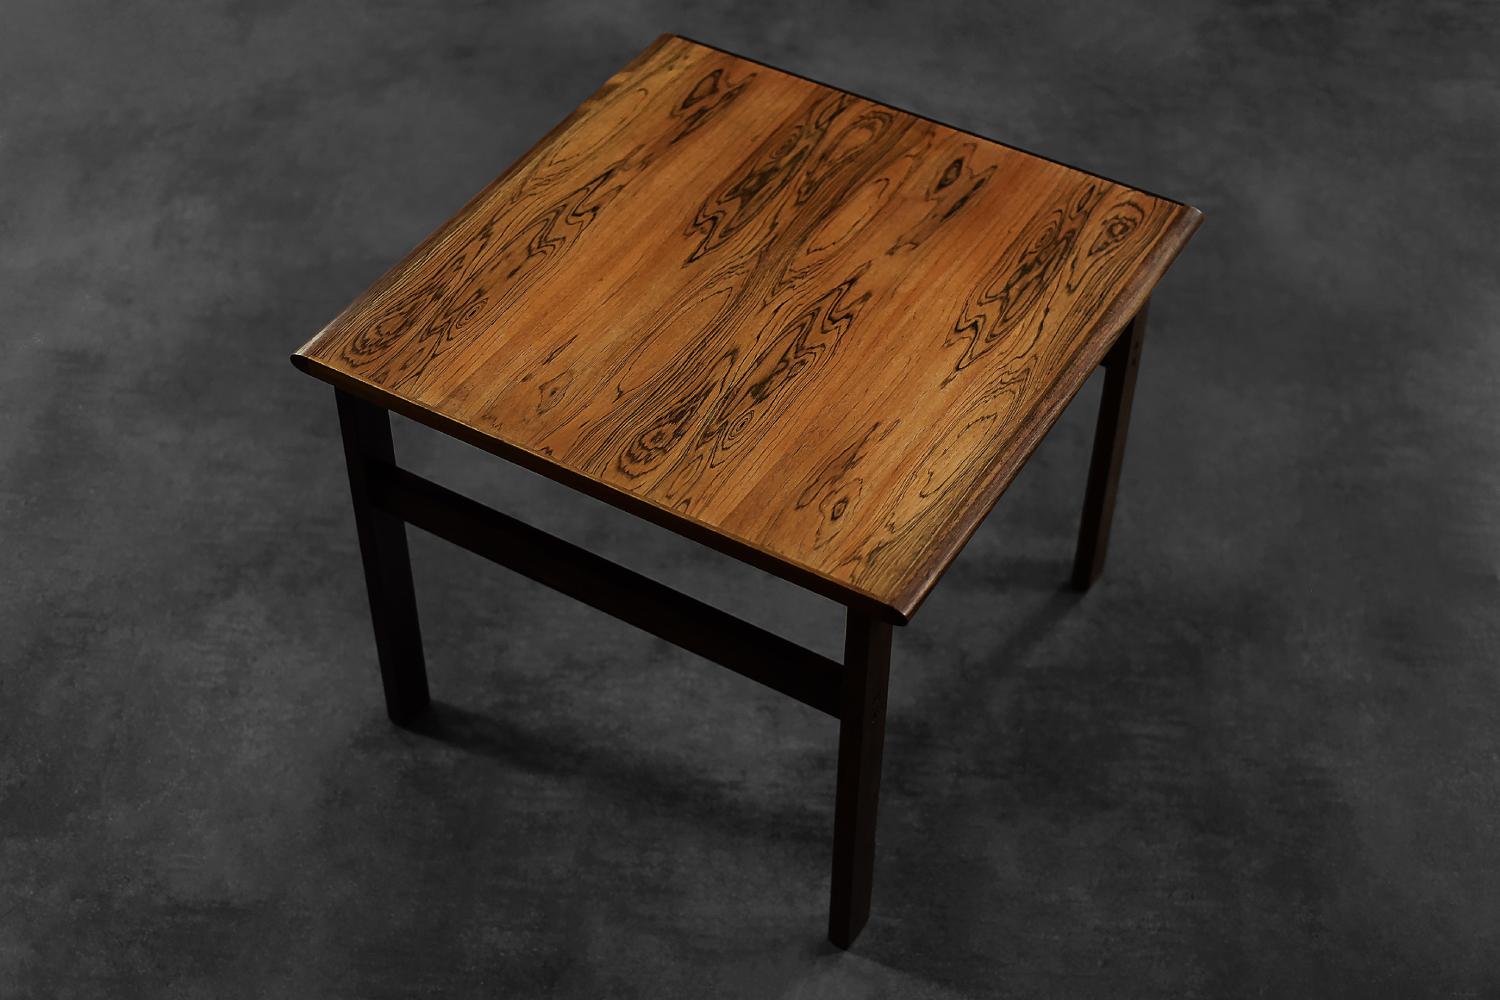 Cette table basse carrée classique de la série Capella a été conçue par Illum Wikkelsø pour la manufacture danoise Niels Eilersen dans les années 1960. Il est fabriqué en bois de rose noble de haute qualité. Cette table basse a une couleur brune